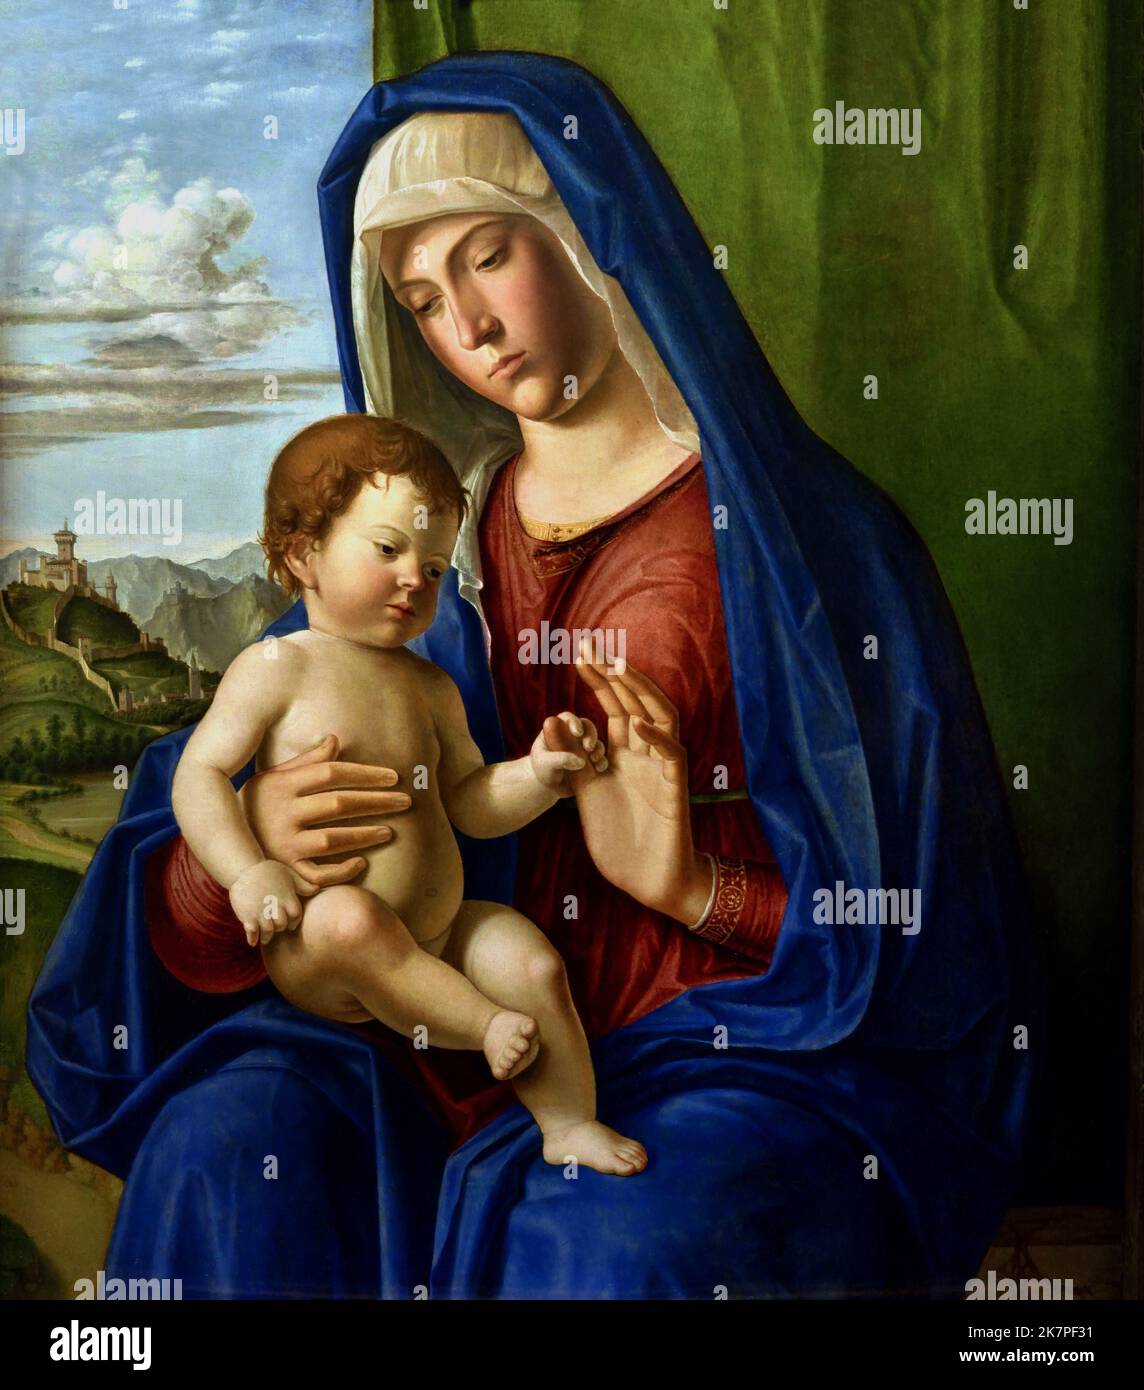 Madonna and Child 1504 Giovanni Battista Cima, also called Cima da Conegliano 1459 – 1517 was an Italian Renaissance painter, Stock Photo